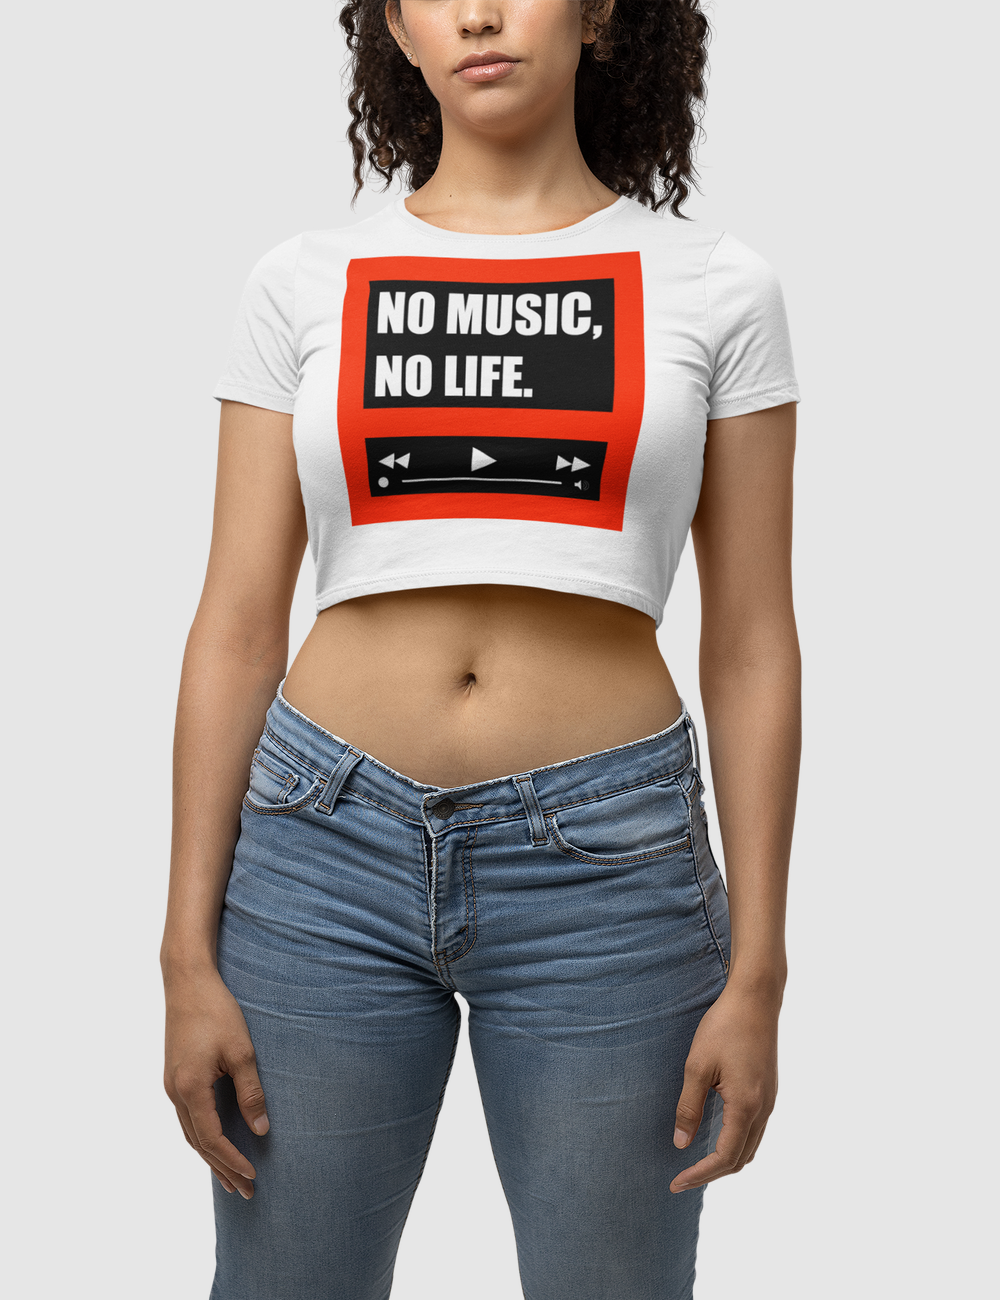 No Music No Life Women's Fitted Crop Top T-Shirt OniTakai